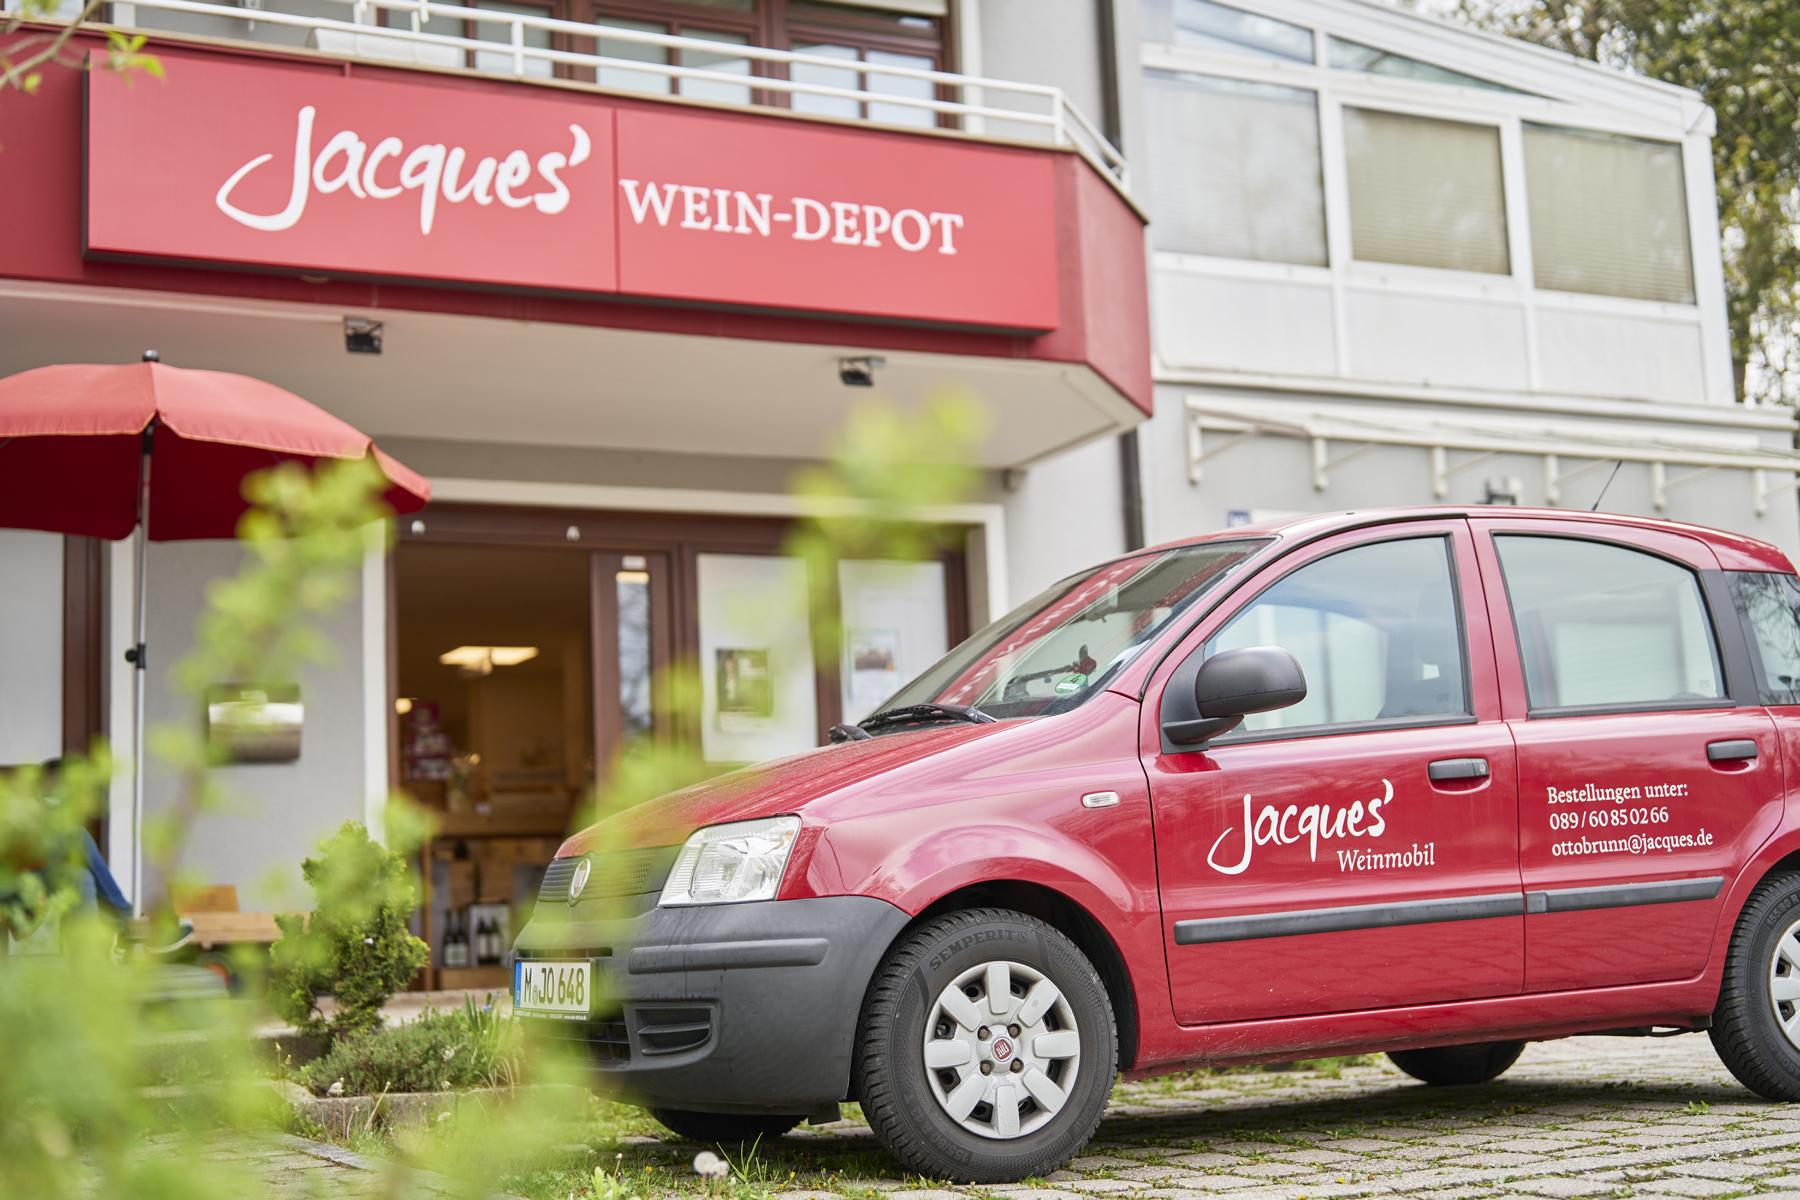 Kundenfoto 1 Jacques’ Wein-Depot Ottobrunn-Riemerling